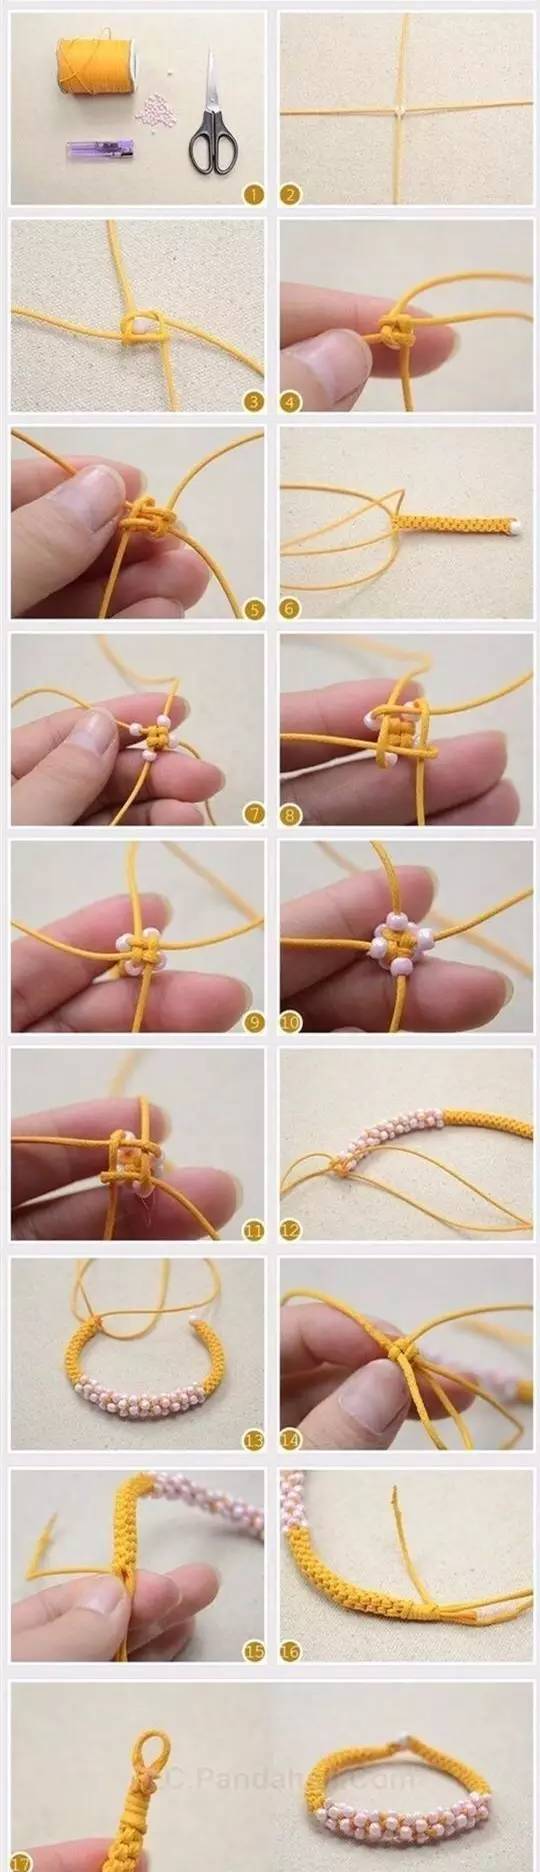 一款漂亮的米珠手链编织教程